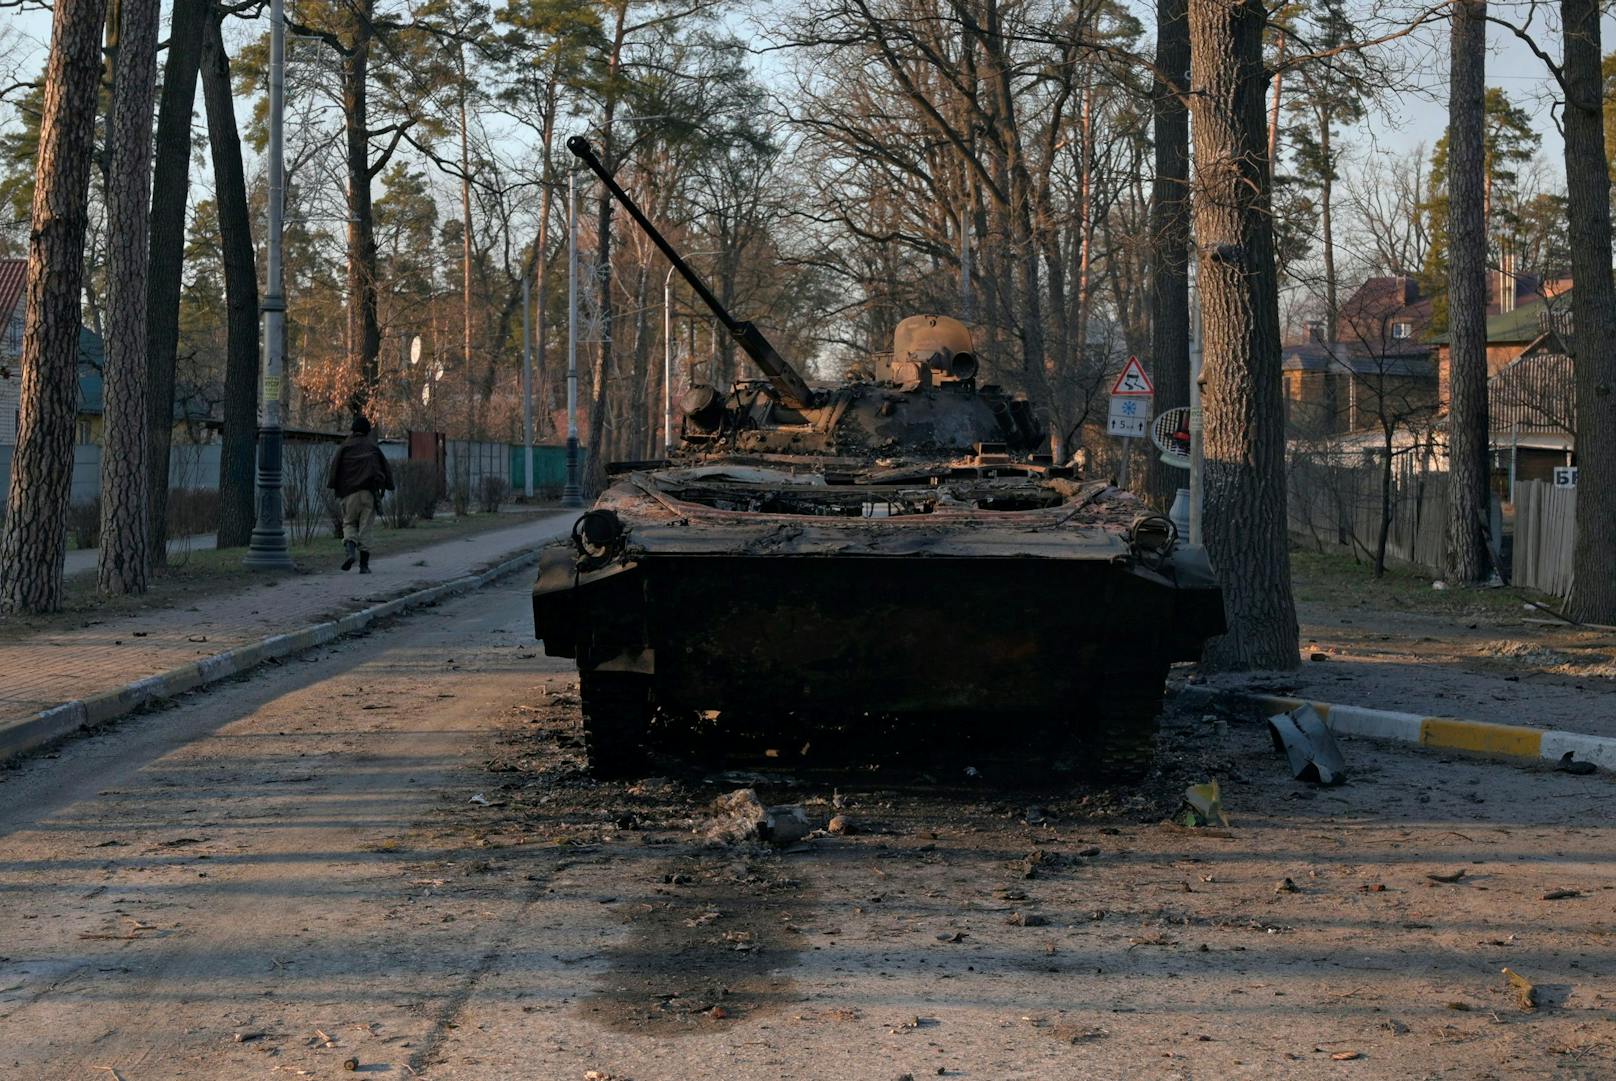 Zerstörtes Kriegsgerät und Trümmer in den Straßen von Bucha in den Anfangstagen der Invasion. Bild vom 28. Februar 2022.